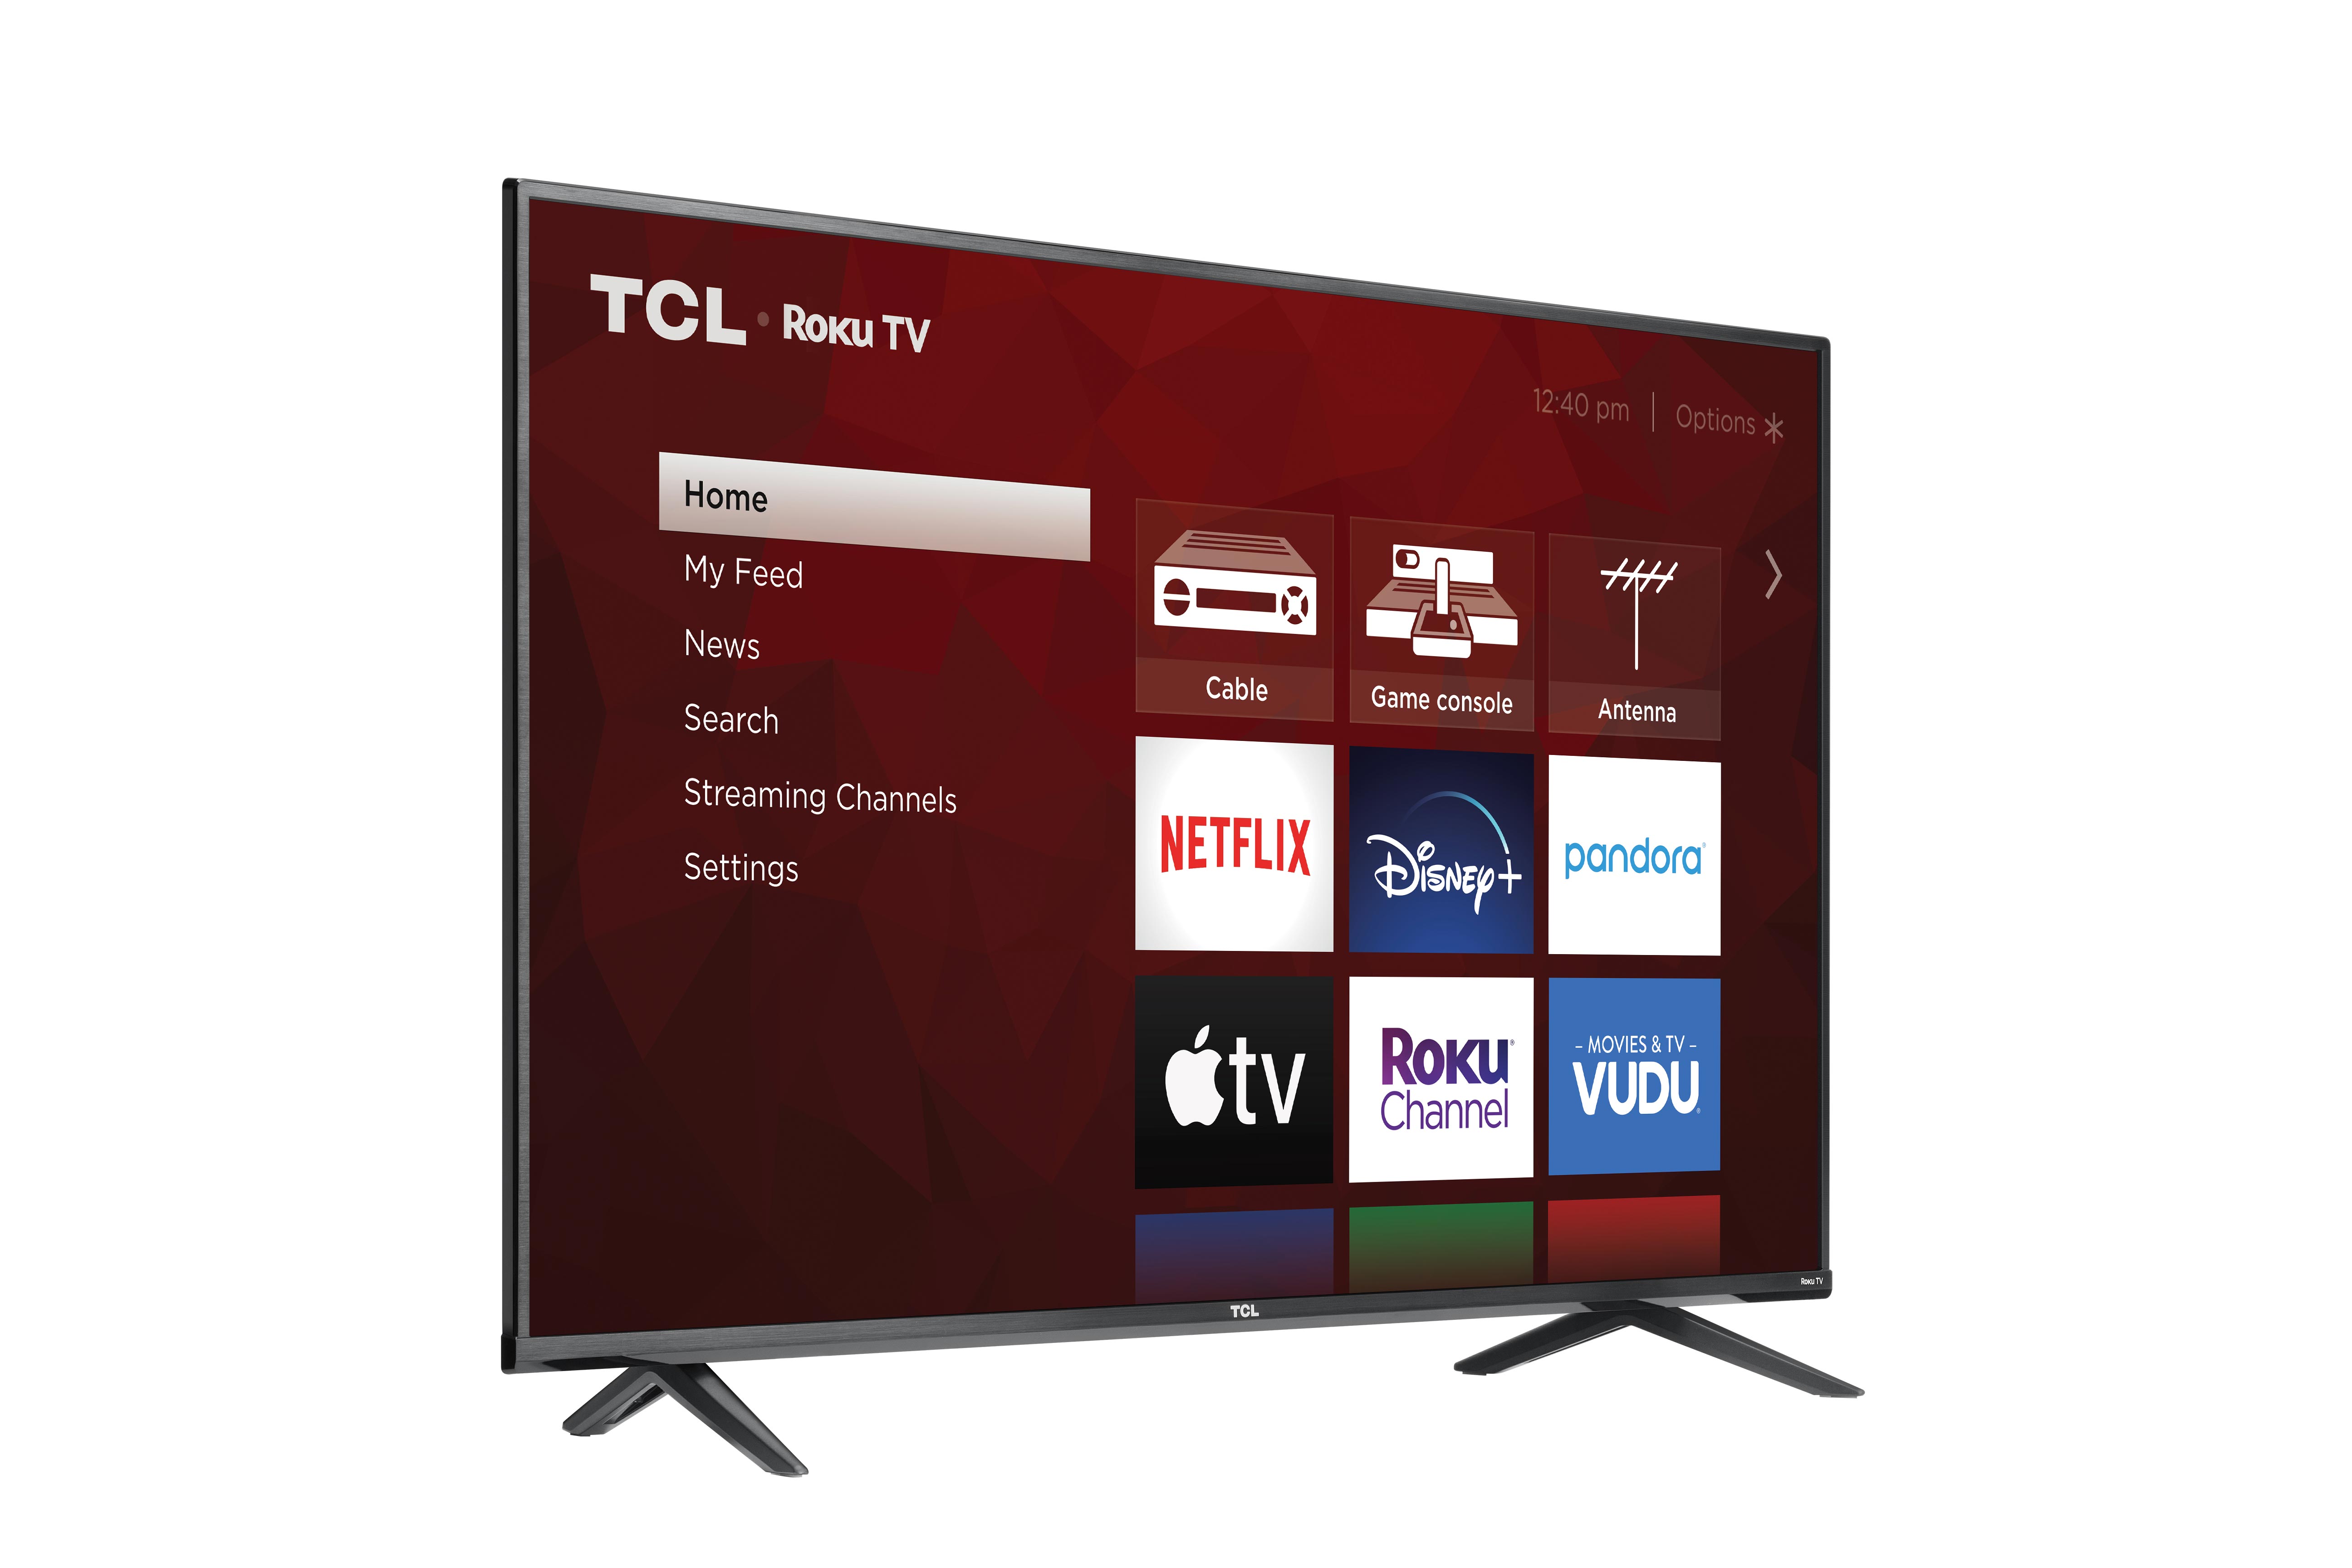 TCL 55" 4K UHD HDR Smart Roku TV - 55S21 - image 2 of 10